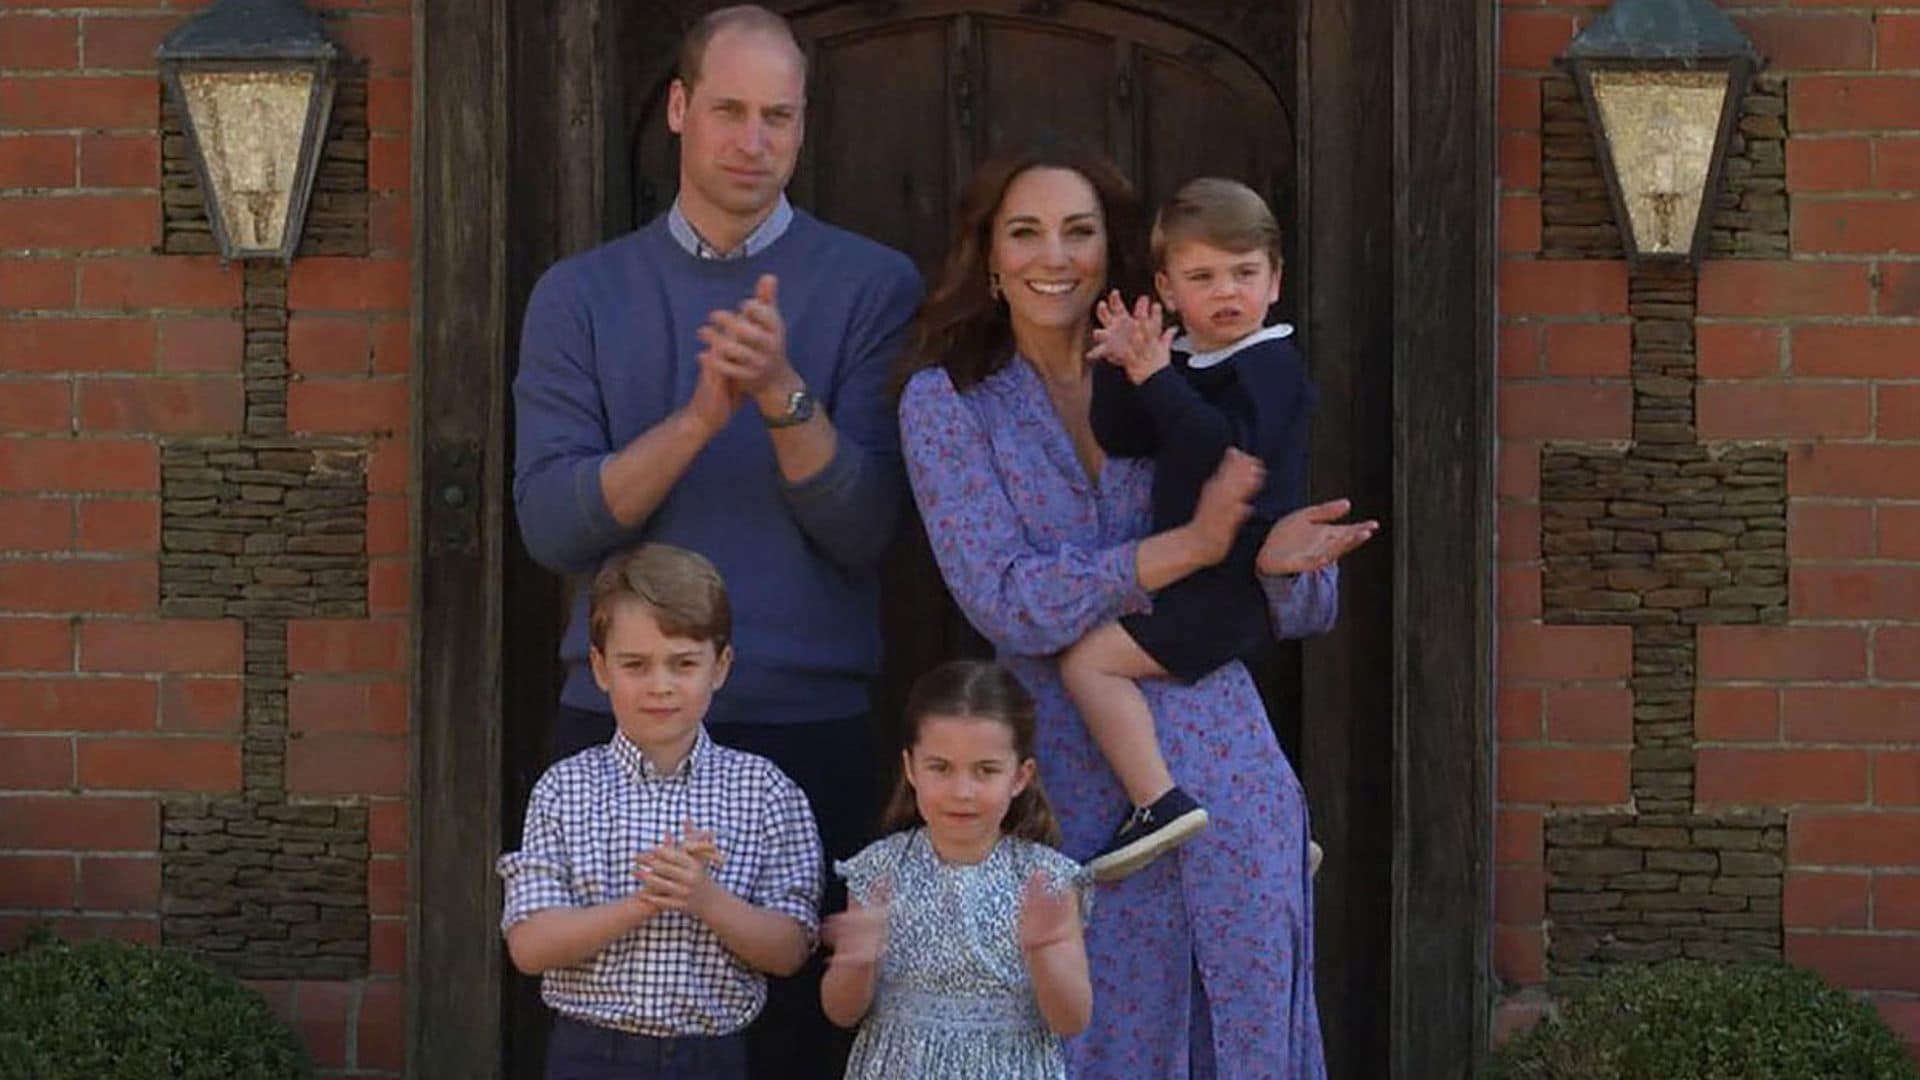 La simpática petición de los príncipes George, Charlotte y Louis a su madre, la duquesa de Cambridge